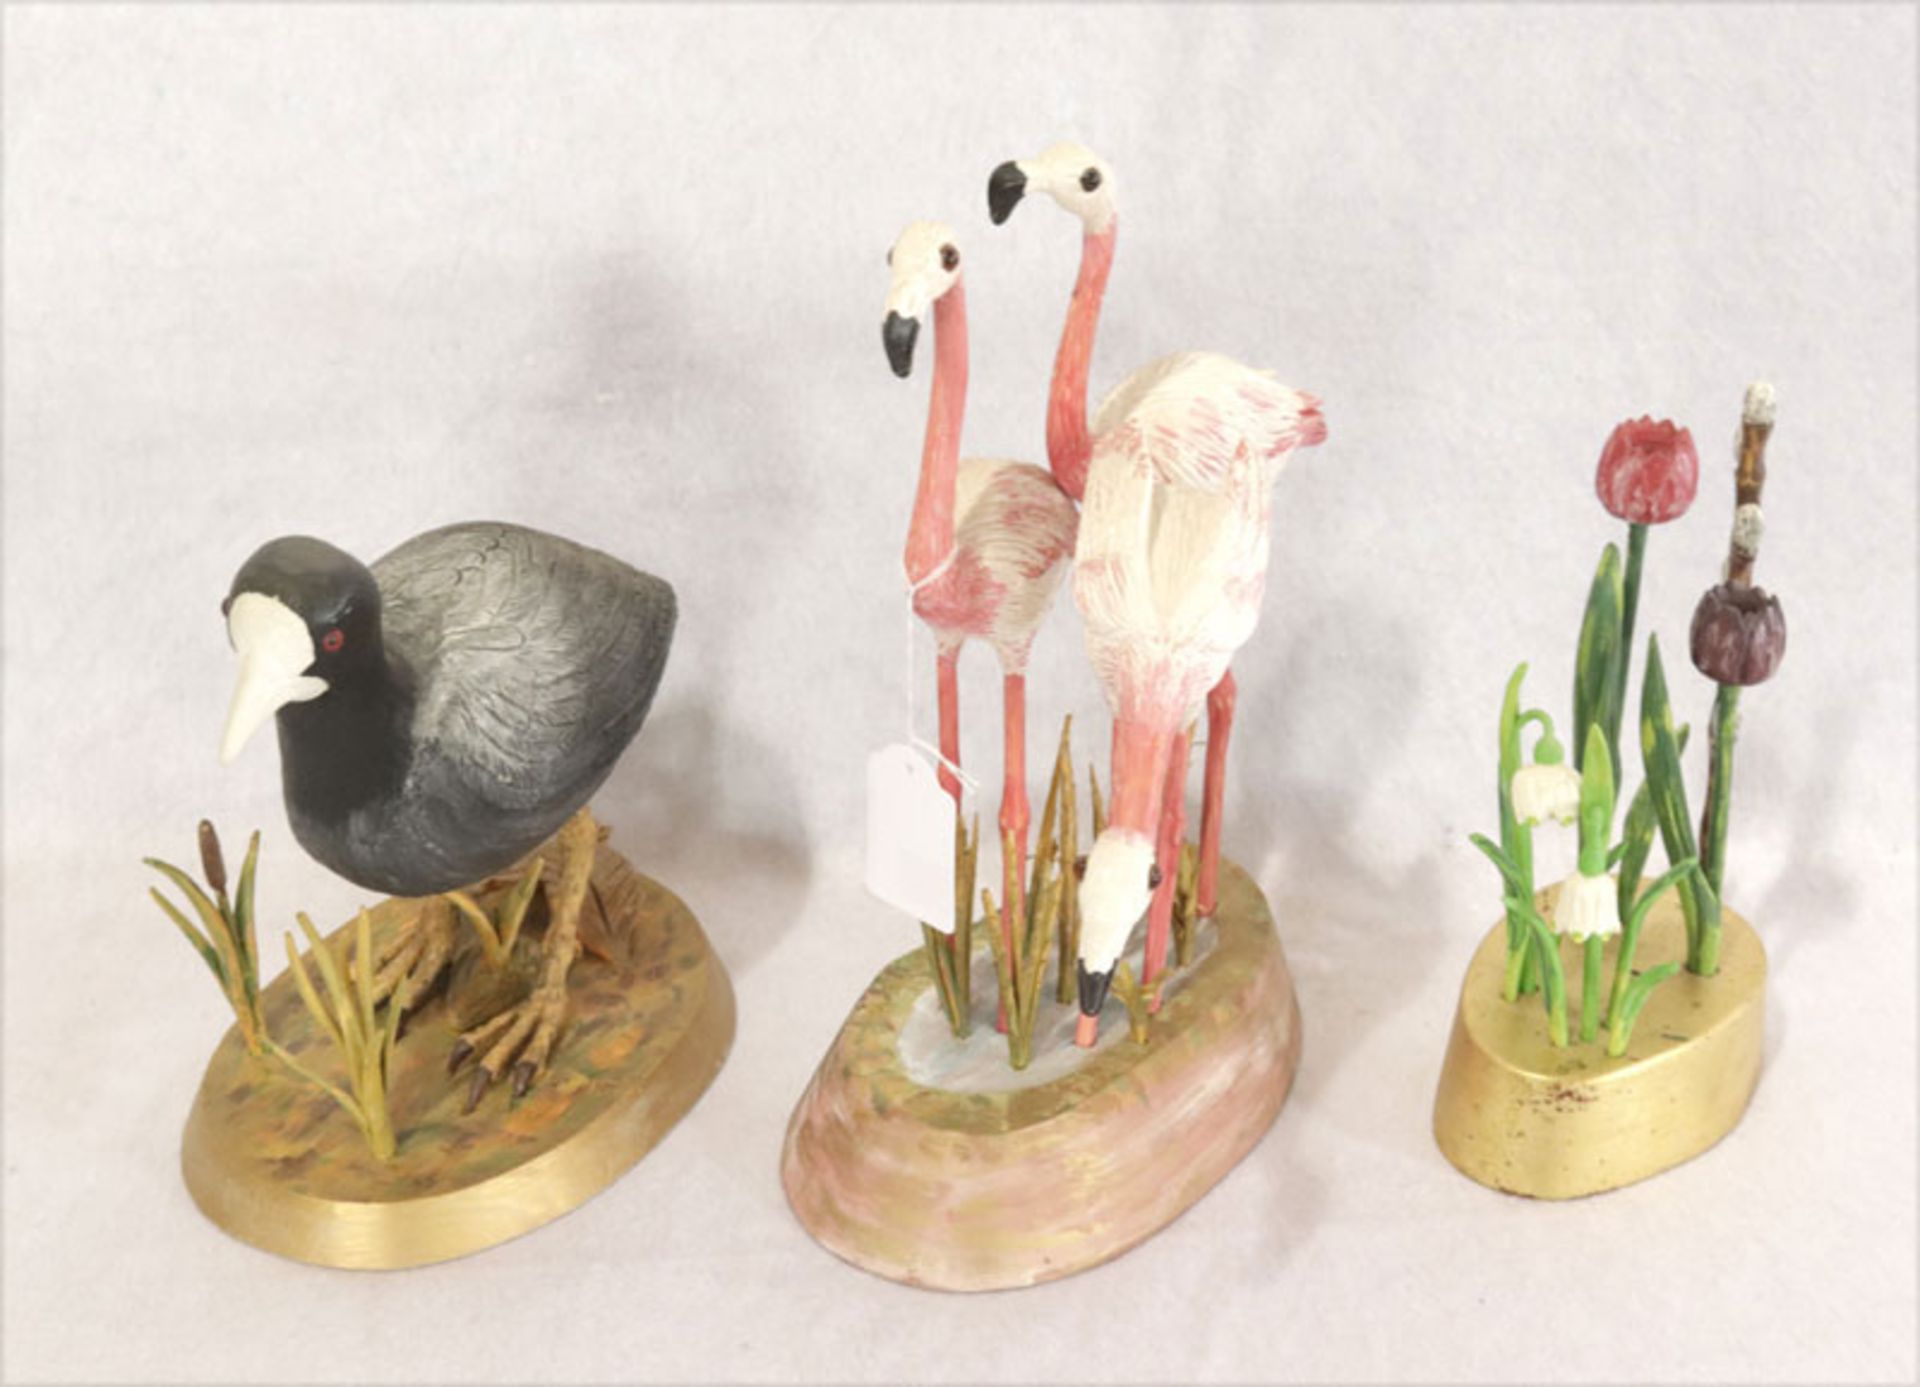 Holzskulpturen: '3 Flamingos', H 30 cm, 'Blässhuhn', H 20 cm, und 'Frühlingsblumen', H 21 cm,